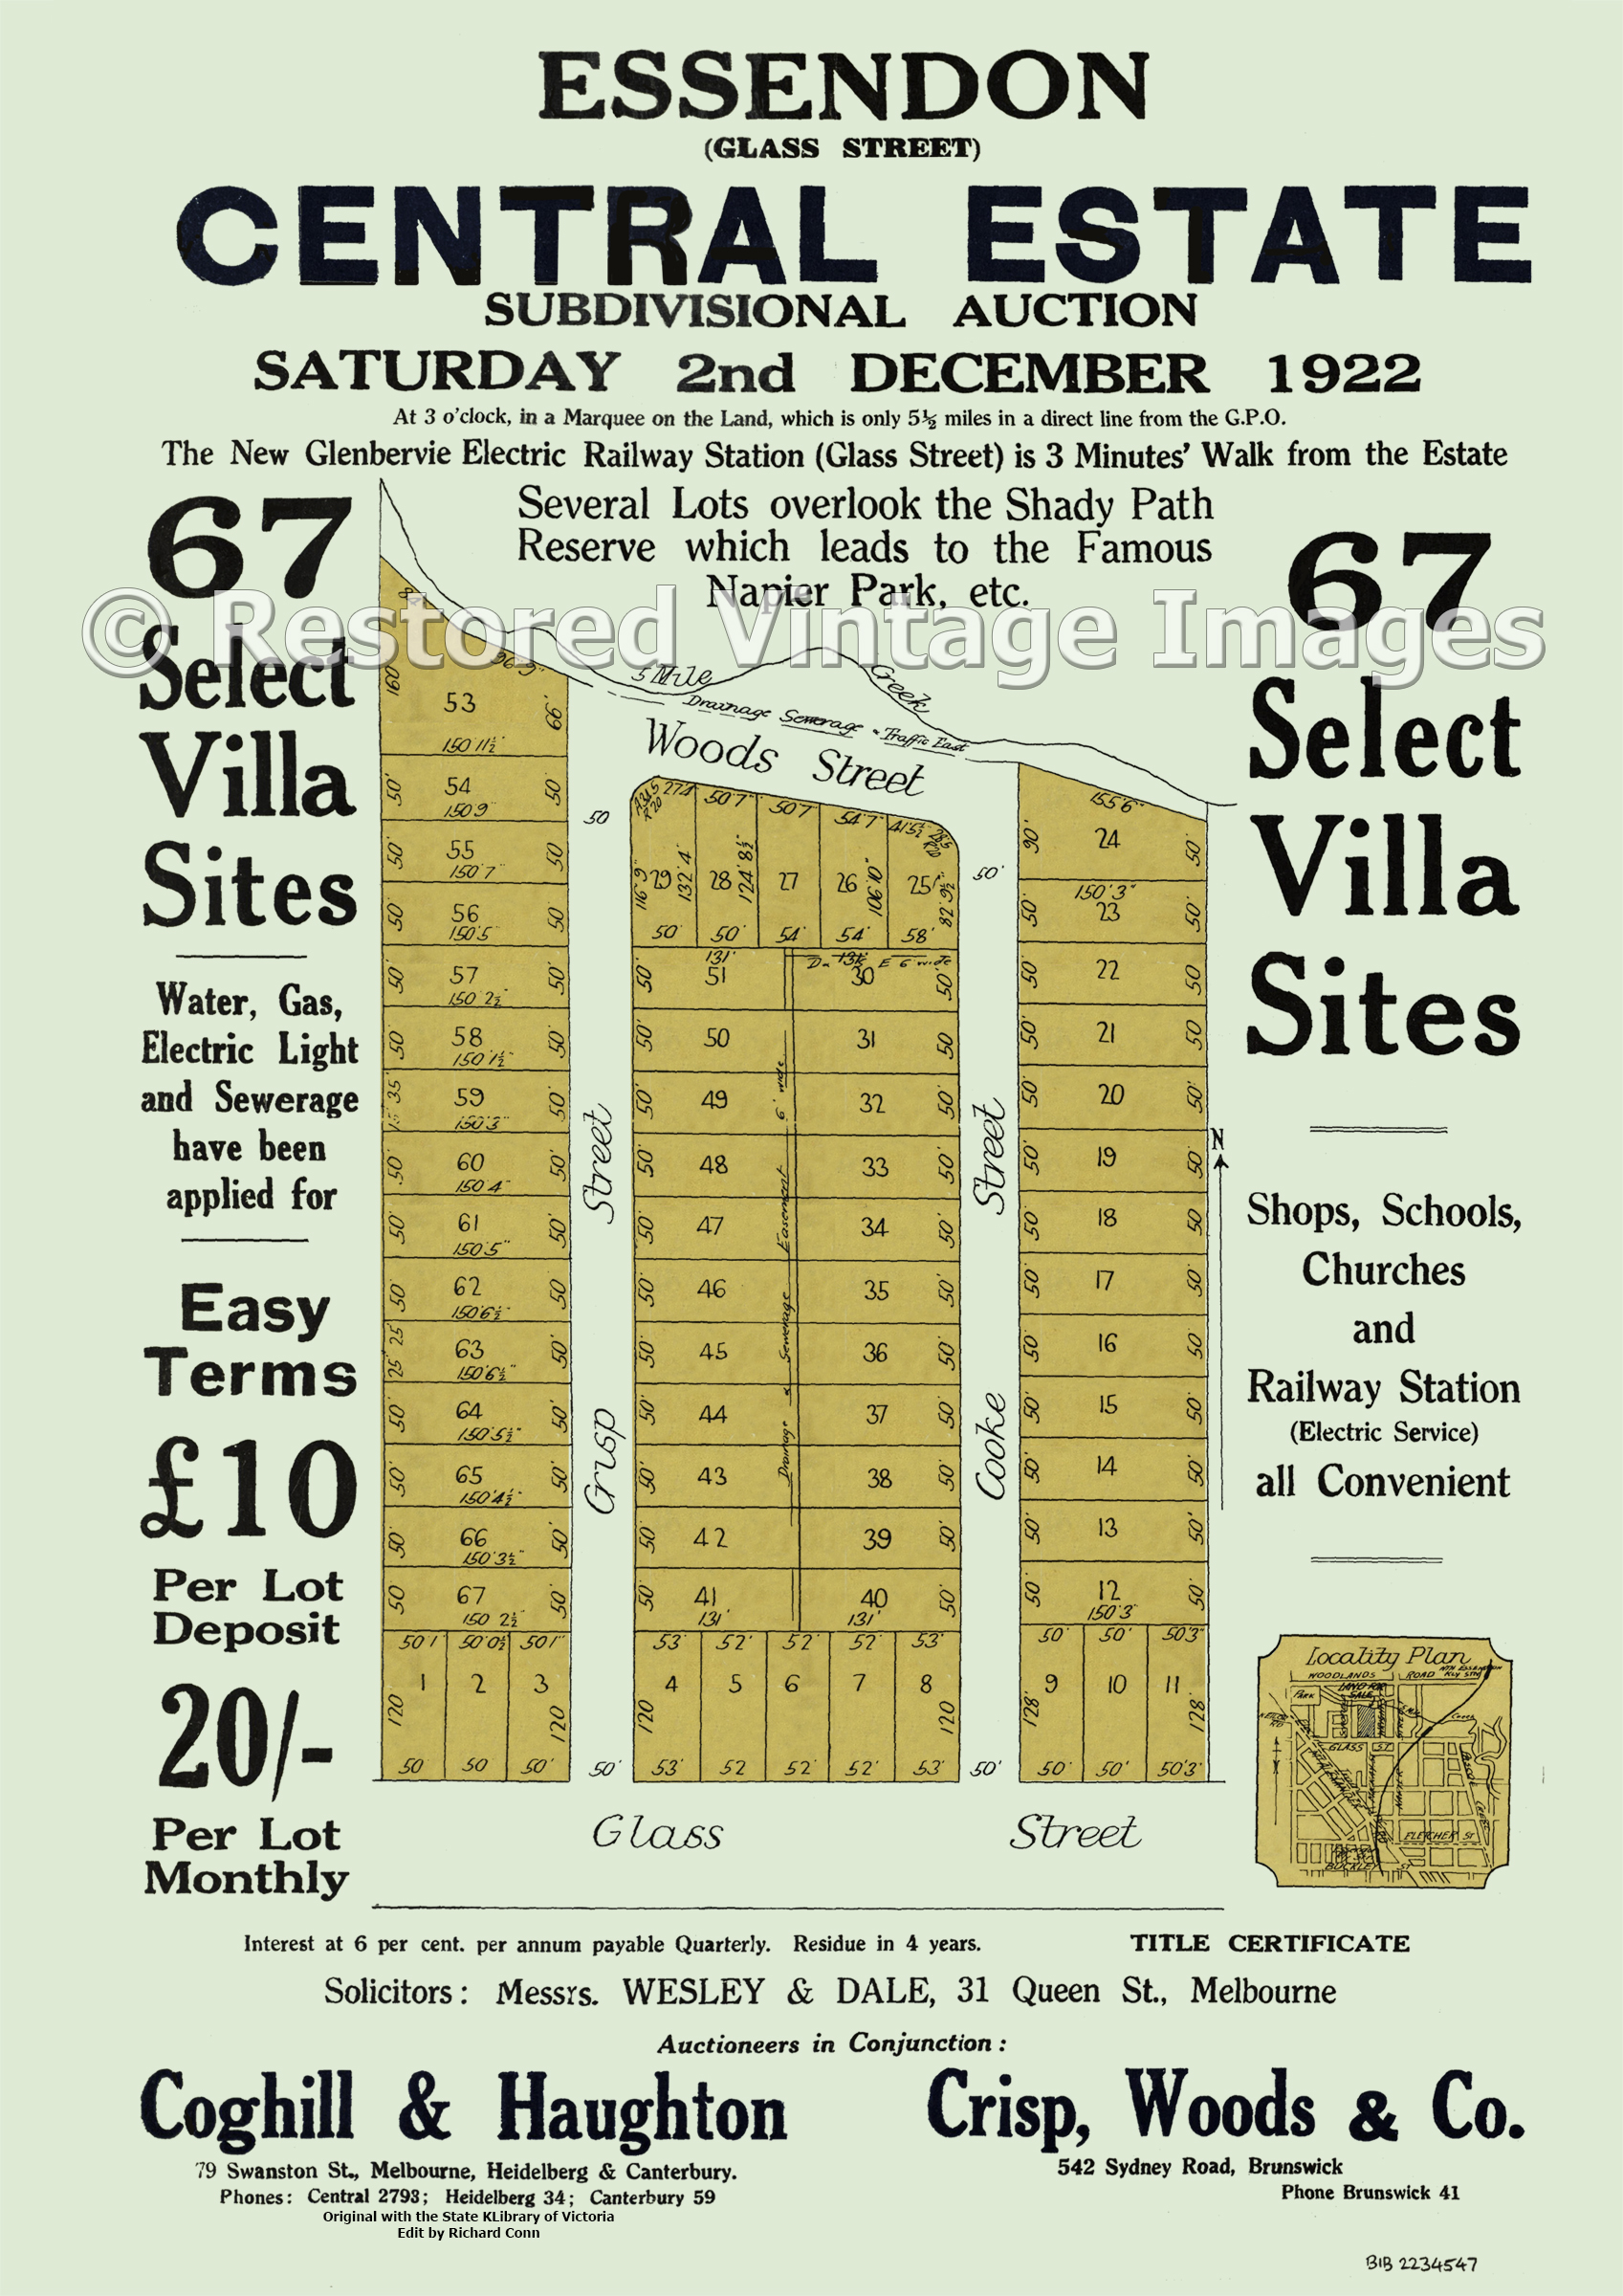 Central Estate 2nd December 1922 – Essendon